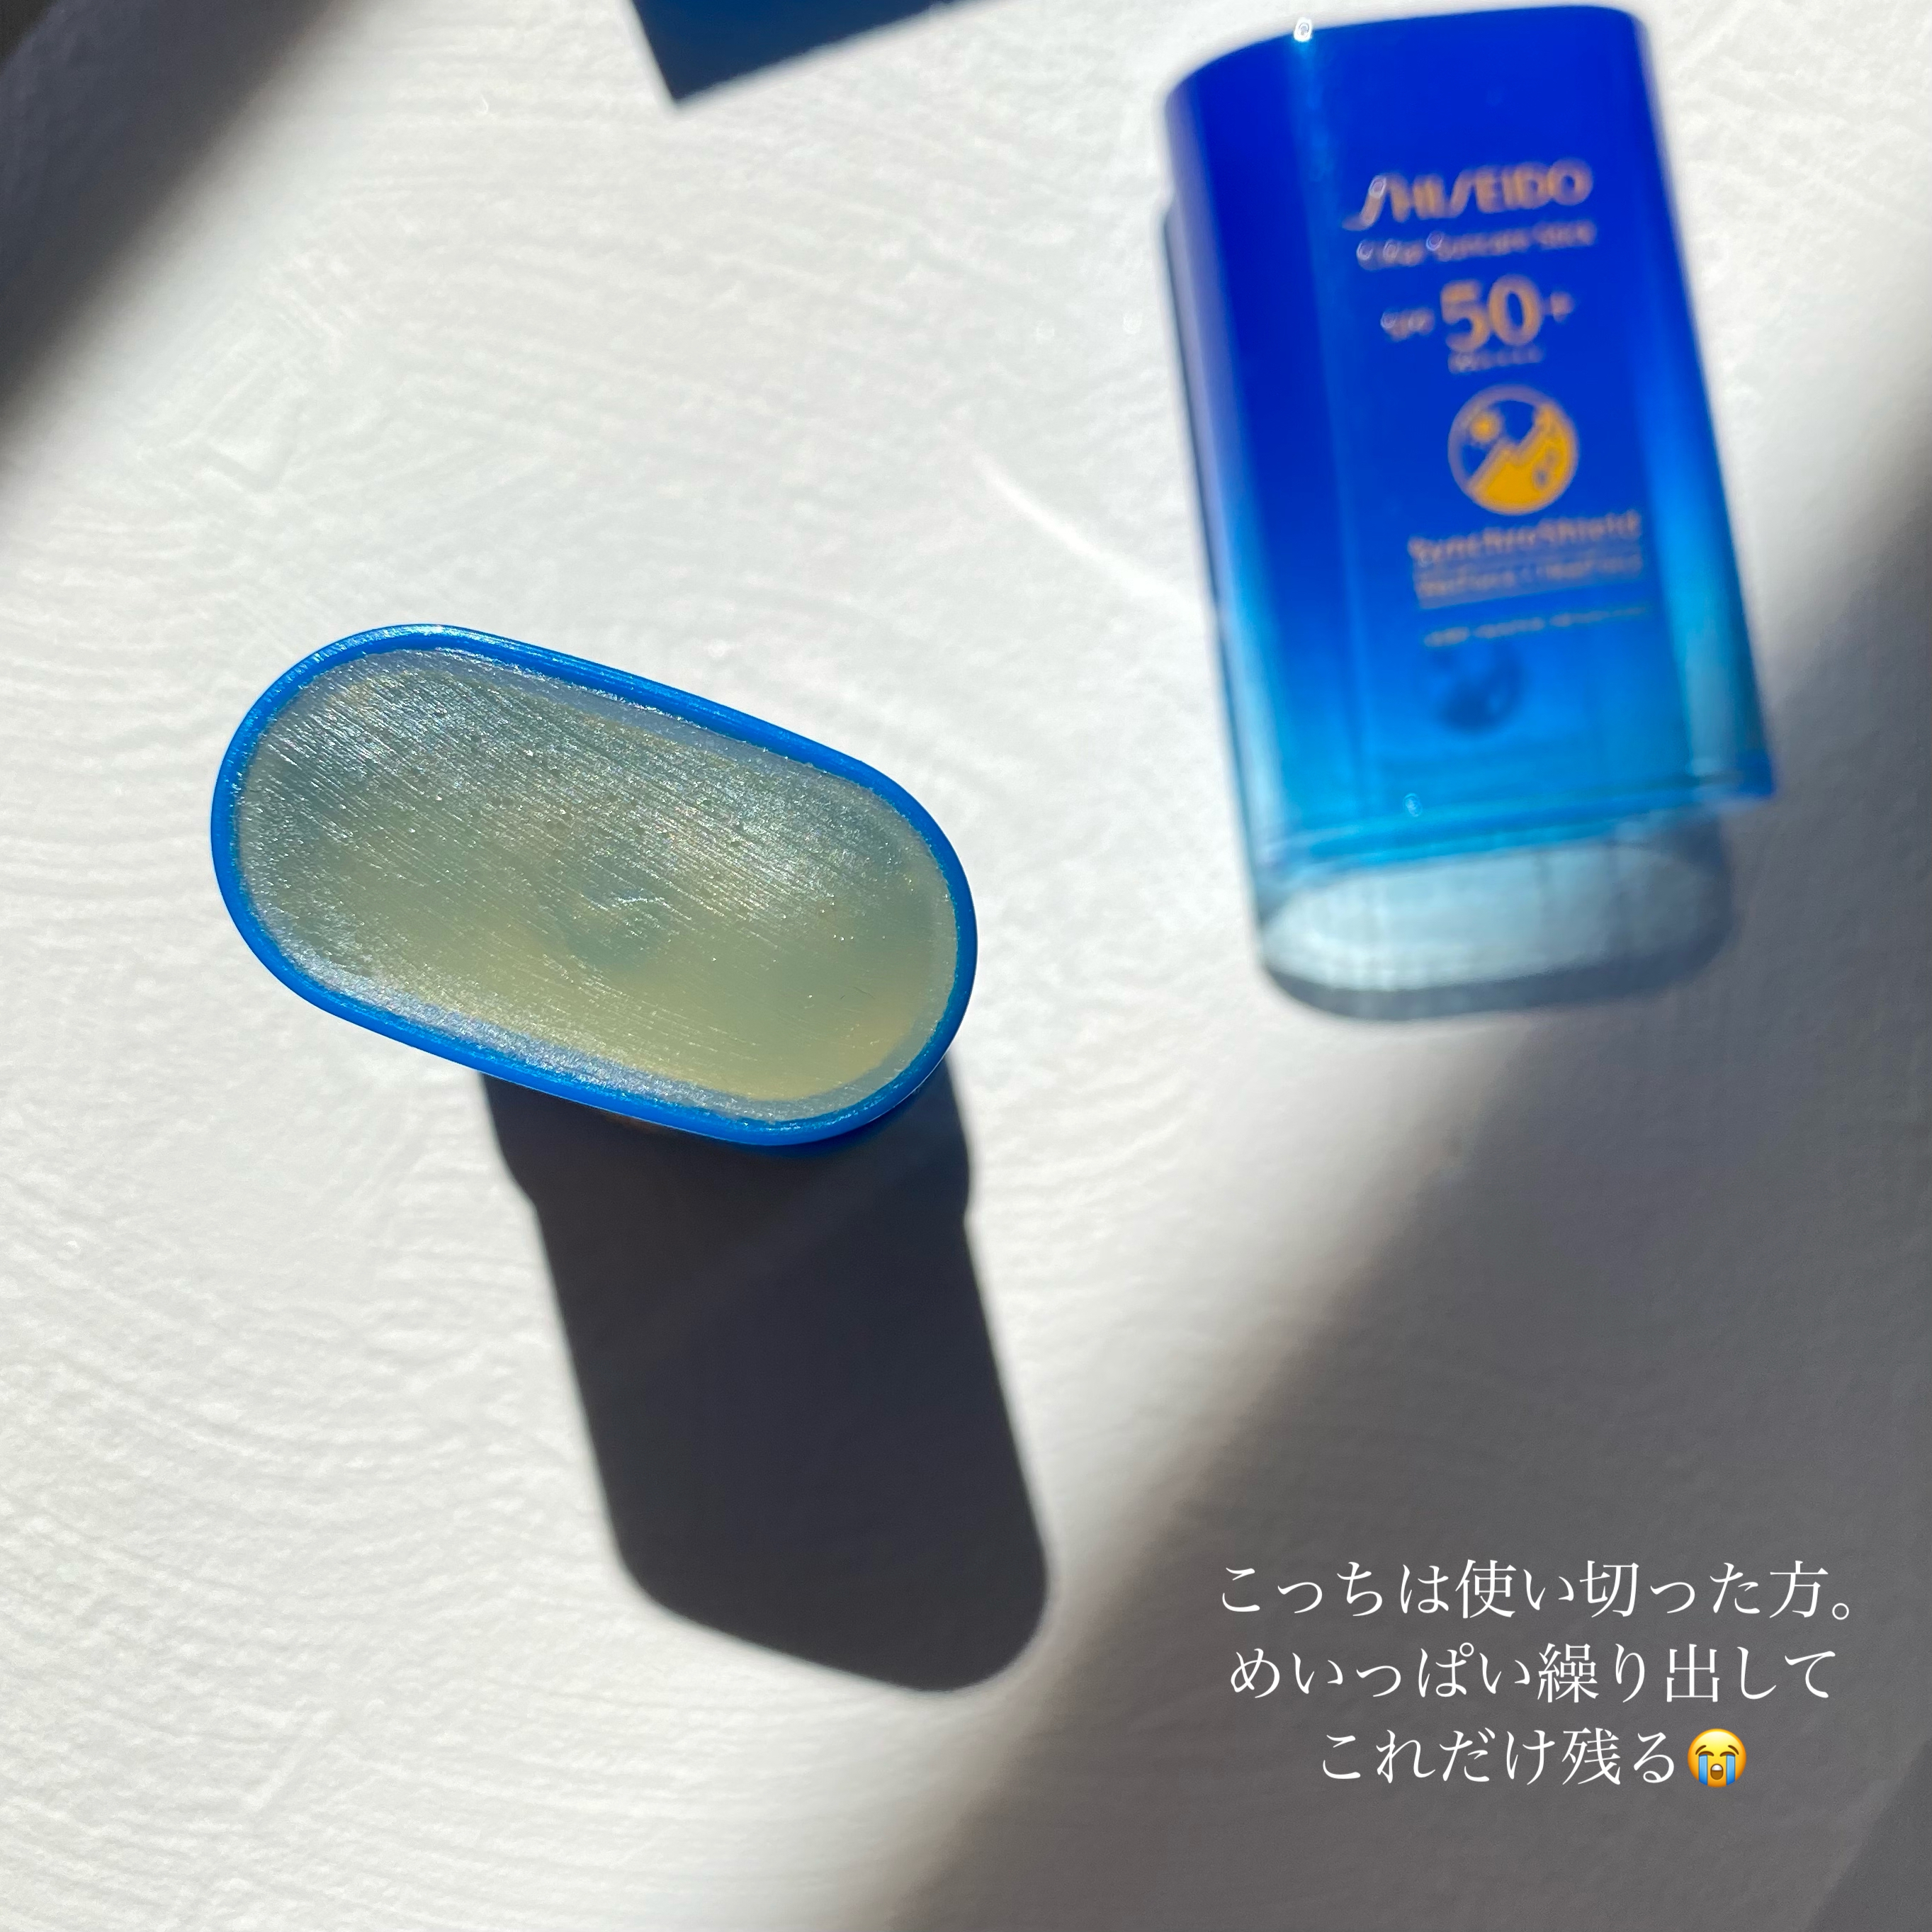 資生堂(SHISEIDO) サンケア クリアスティック UVプロテクターを使ったHimachinさんのクチコミ画像6